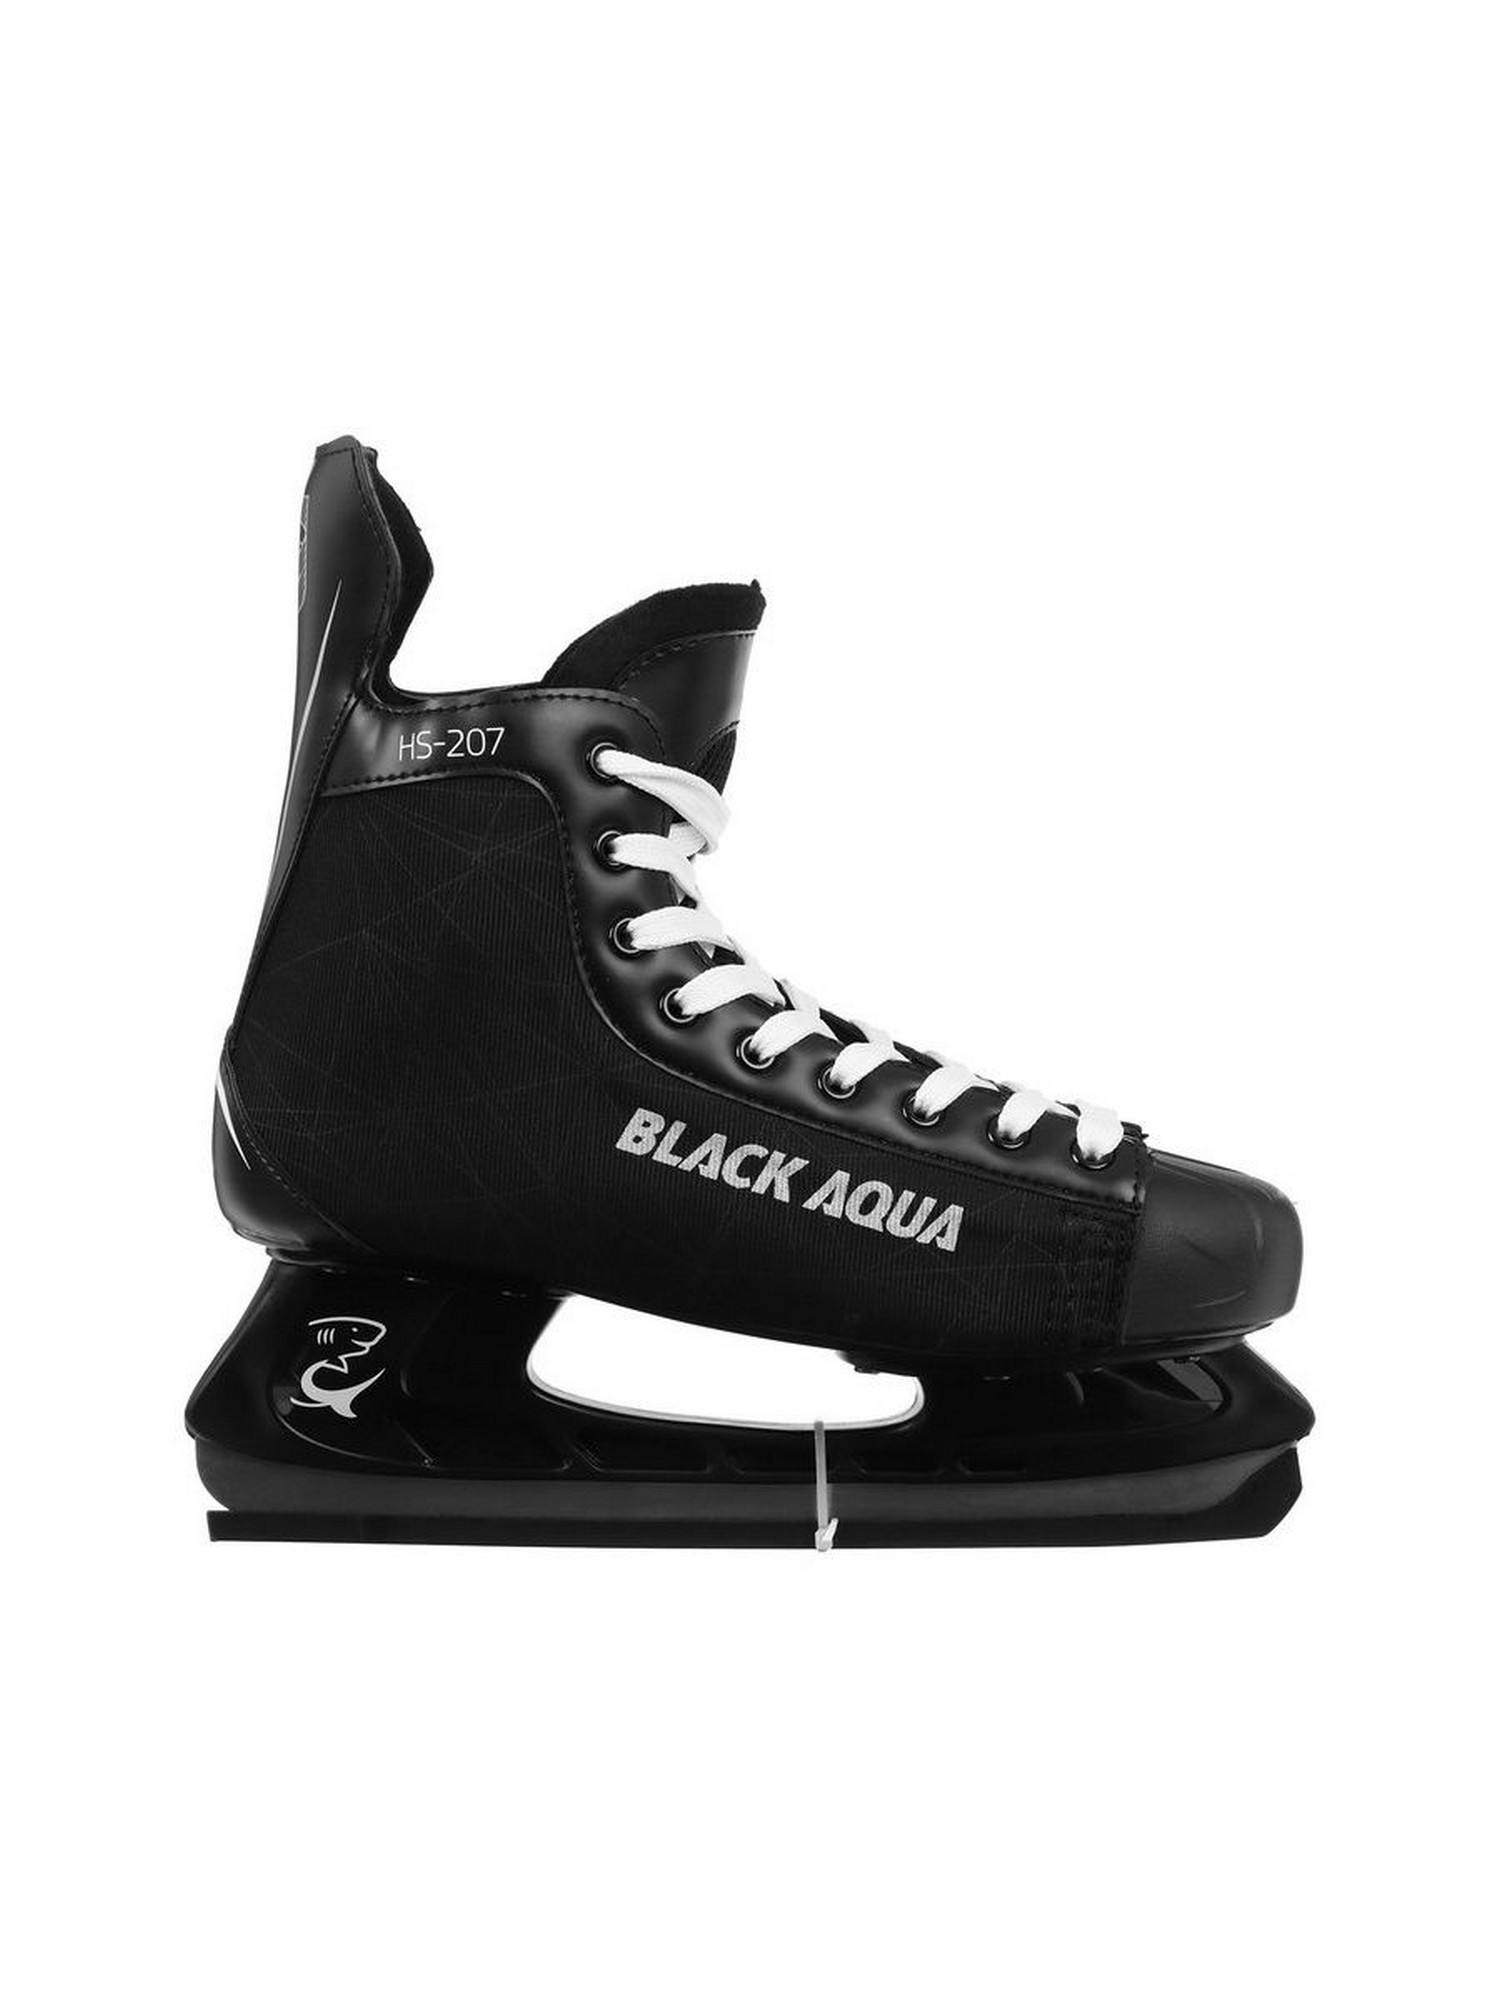 Купить Коньки хоккейные Black Aqua HS-207,